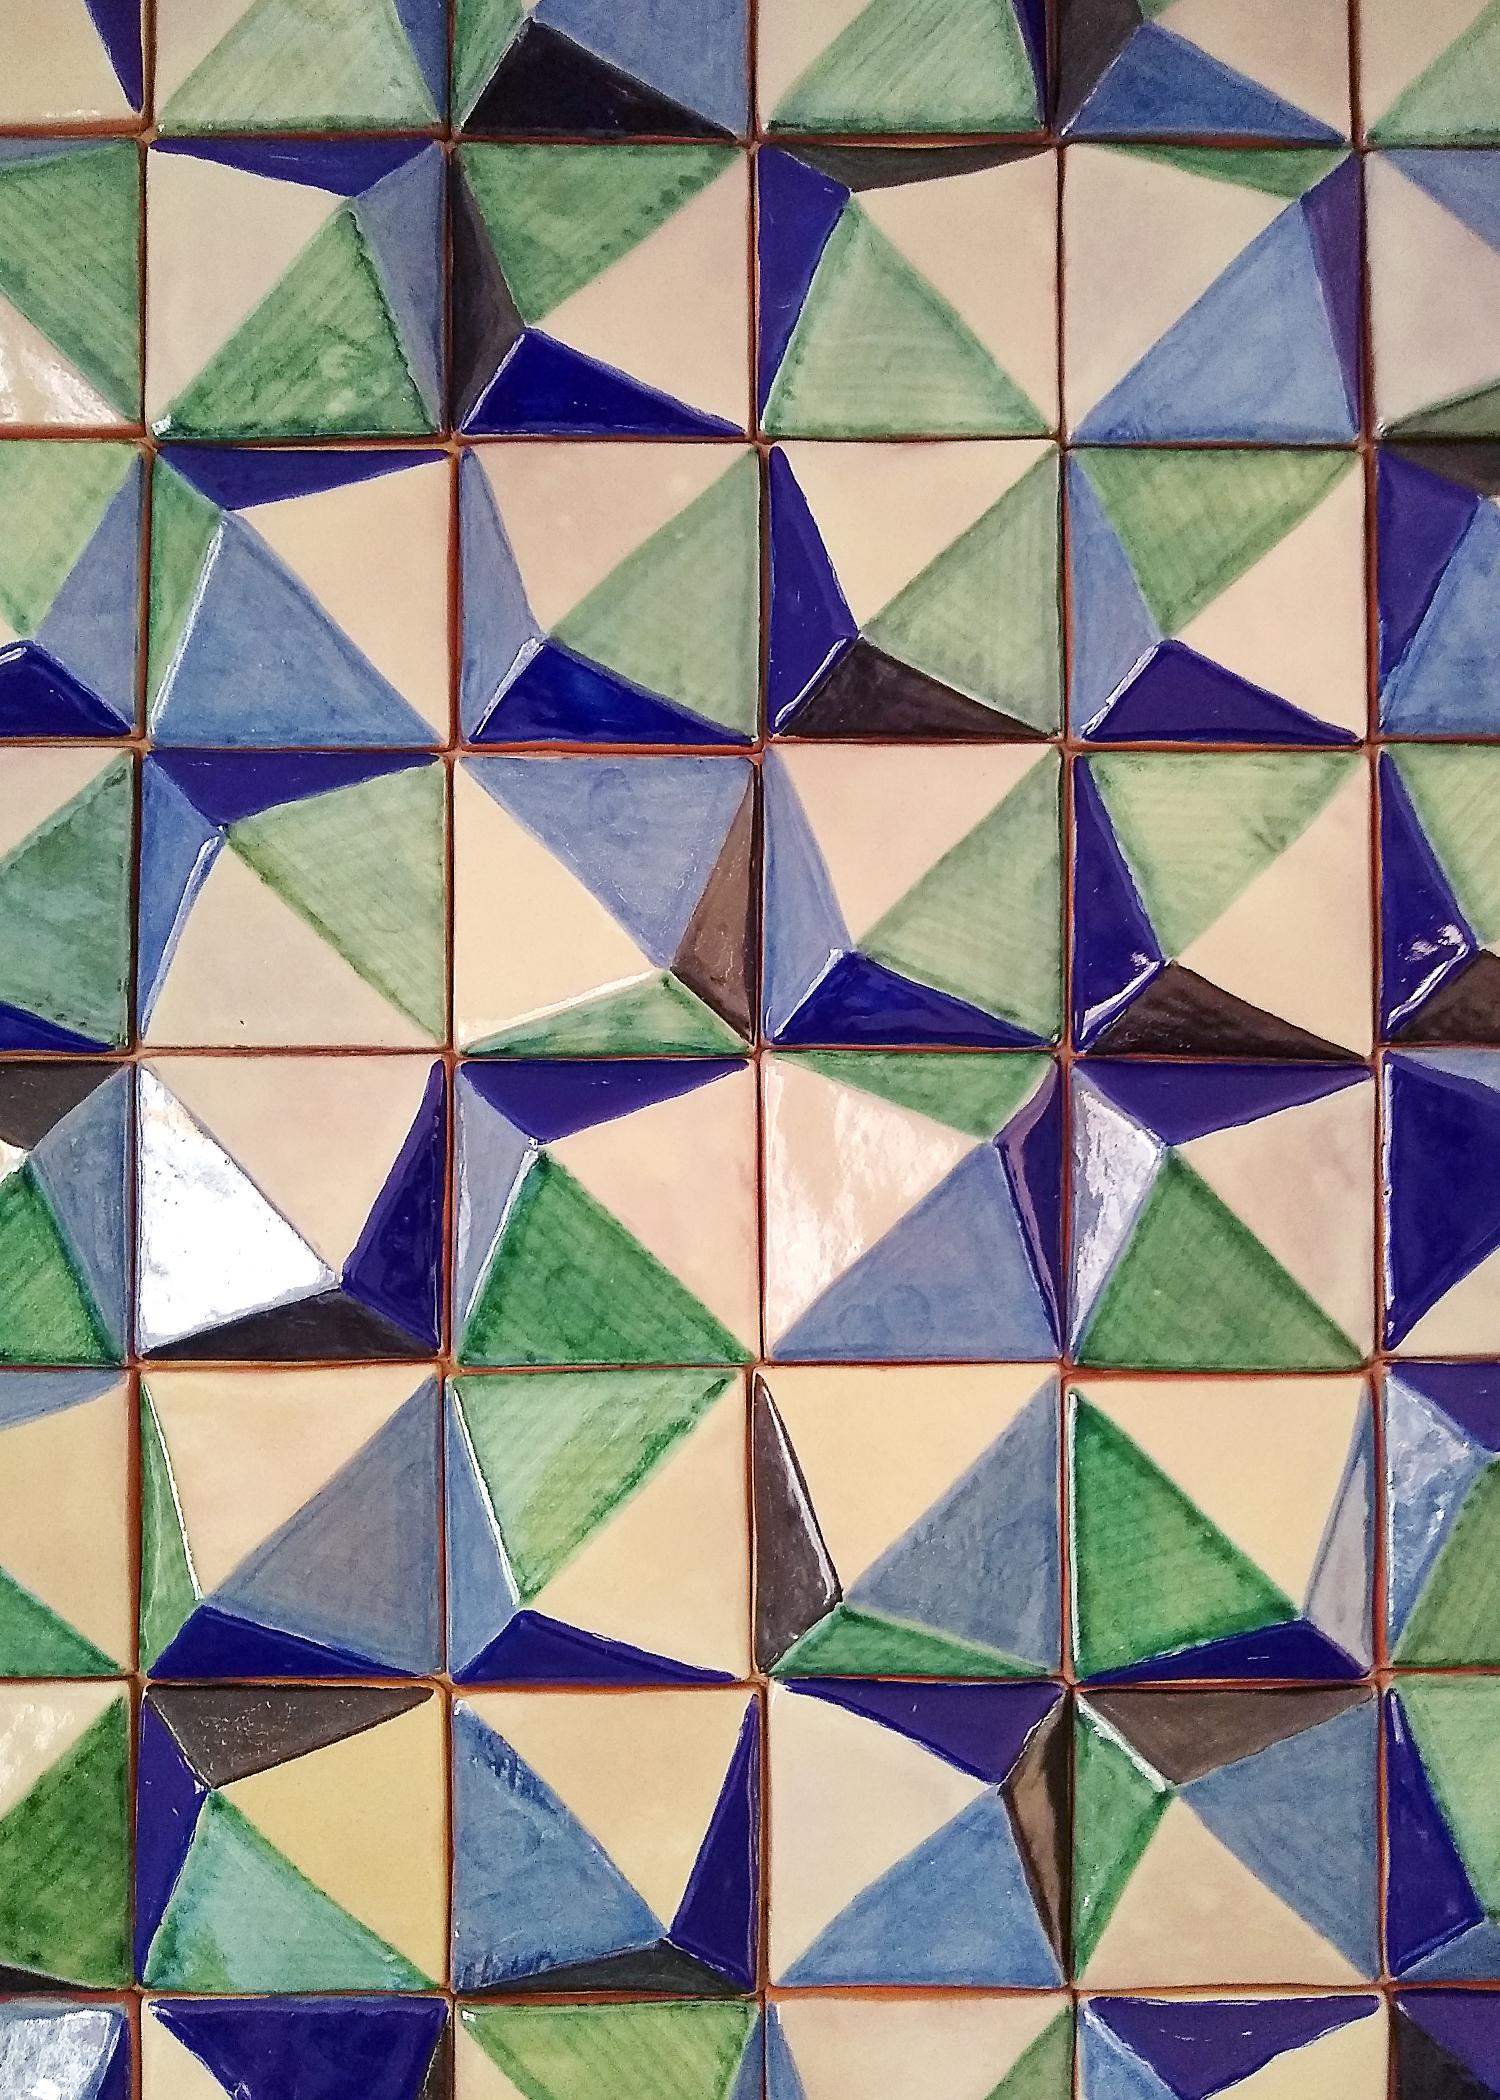 Diese zeitgenössische Azulejo-Fliese formt ein Mosaik, das sich perfekt für die Dekoration von Küchen oder Außenbereichen eignet. Hergestellt in der Talavera-Technik. Der Künstler Cesar Torres porträtiert die koloniale Kunst Mexikos, diesmal jedoch